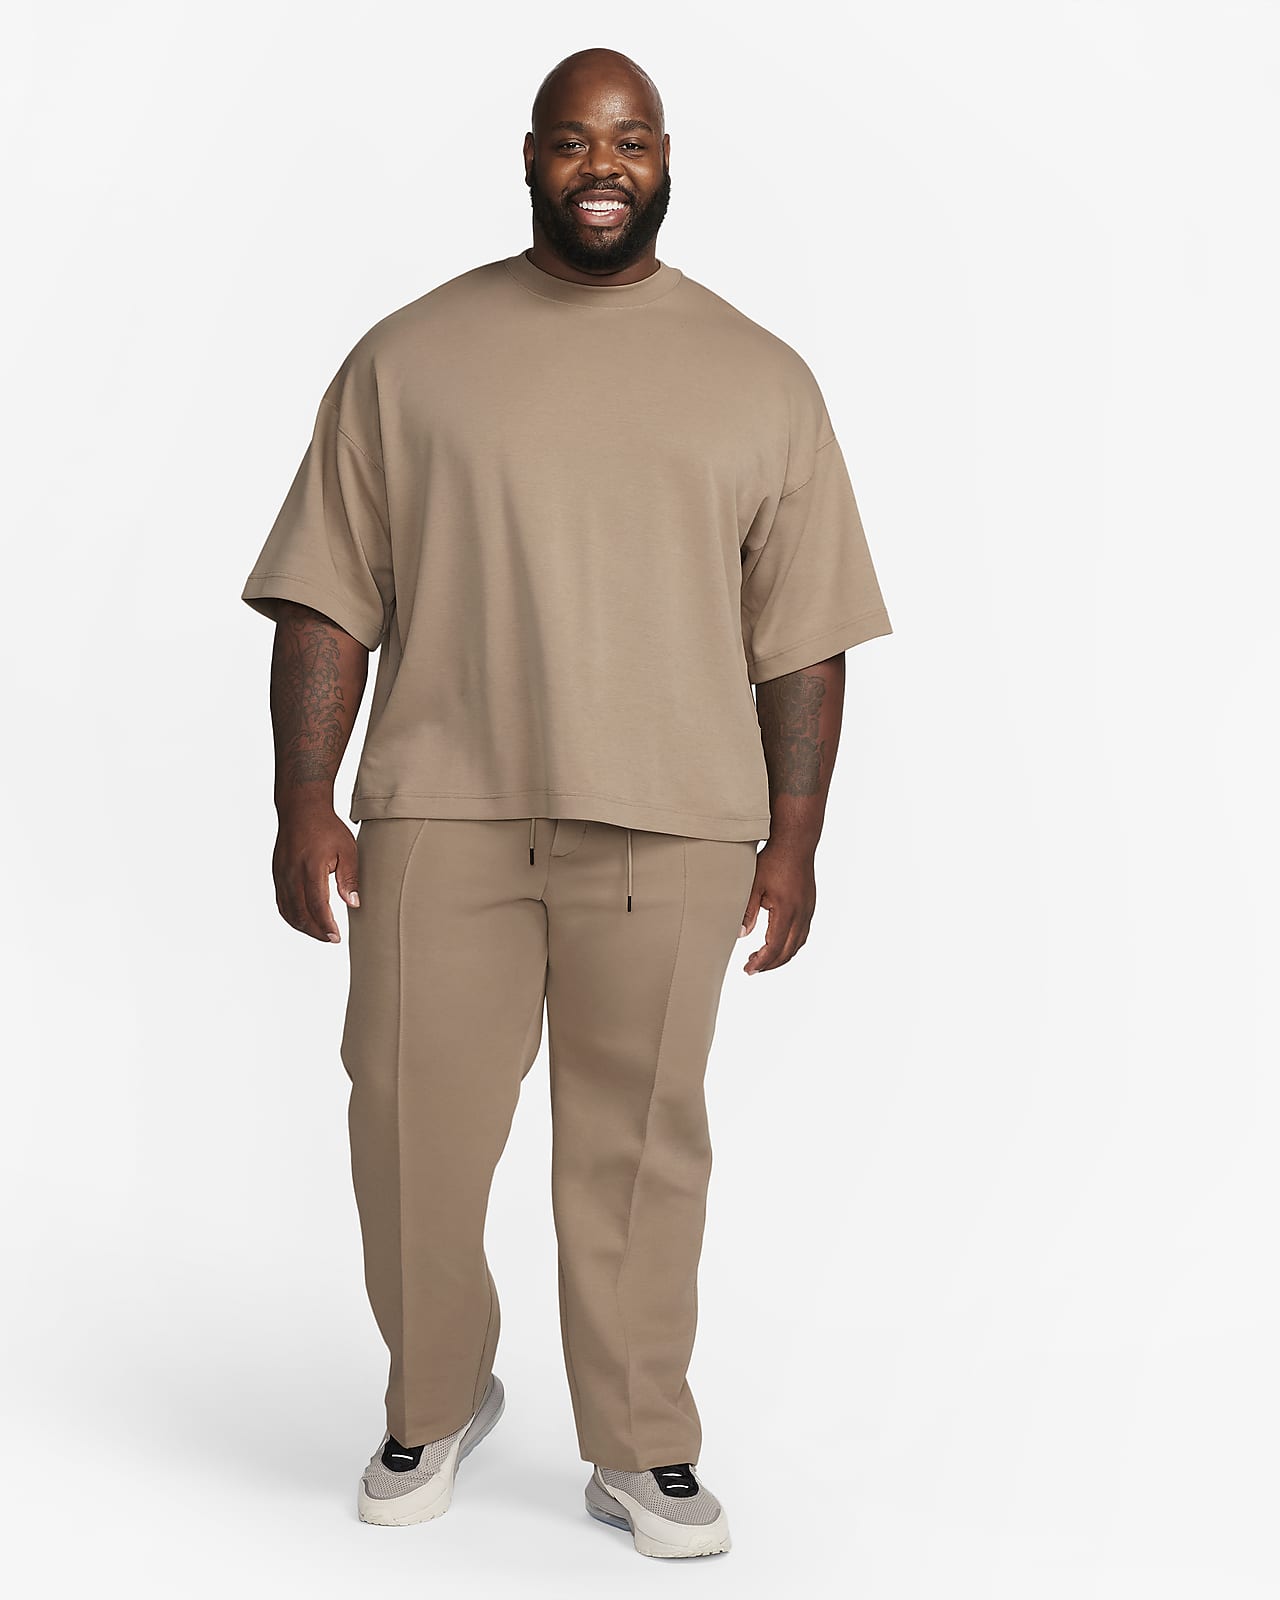 Nike Sportswear Tech Fleece Joggers Mineral Teal/Black Men's - FW22 - US